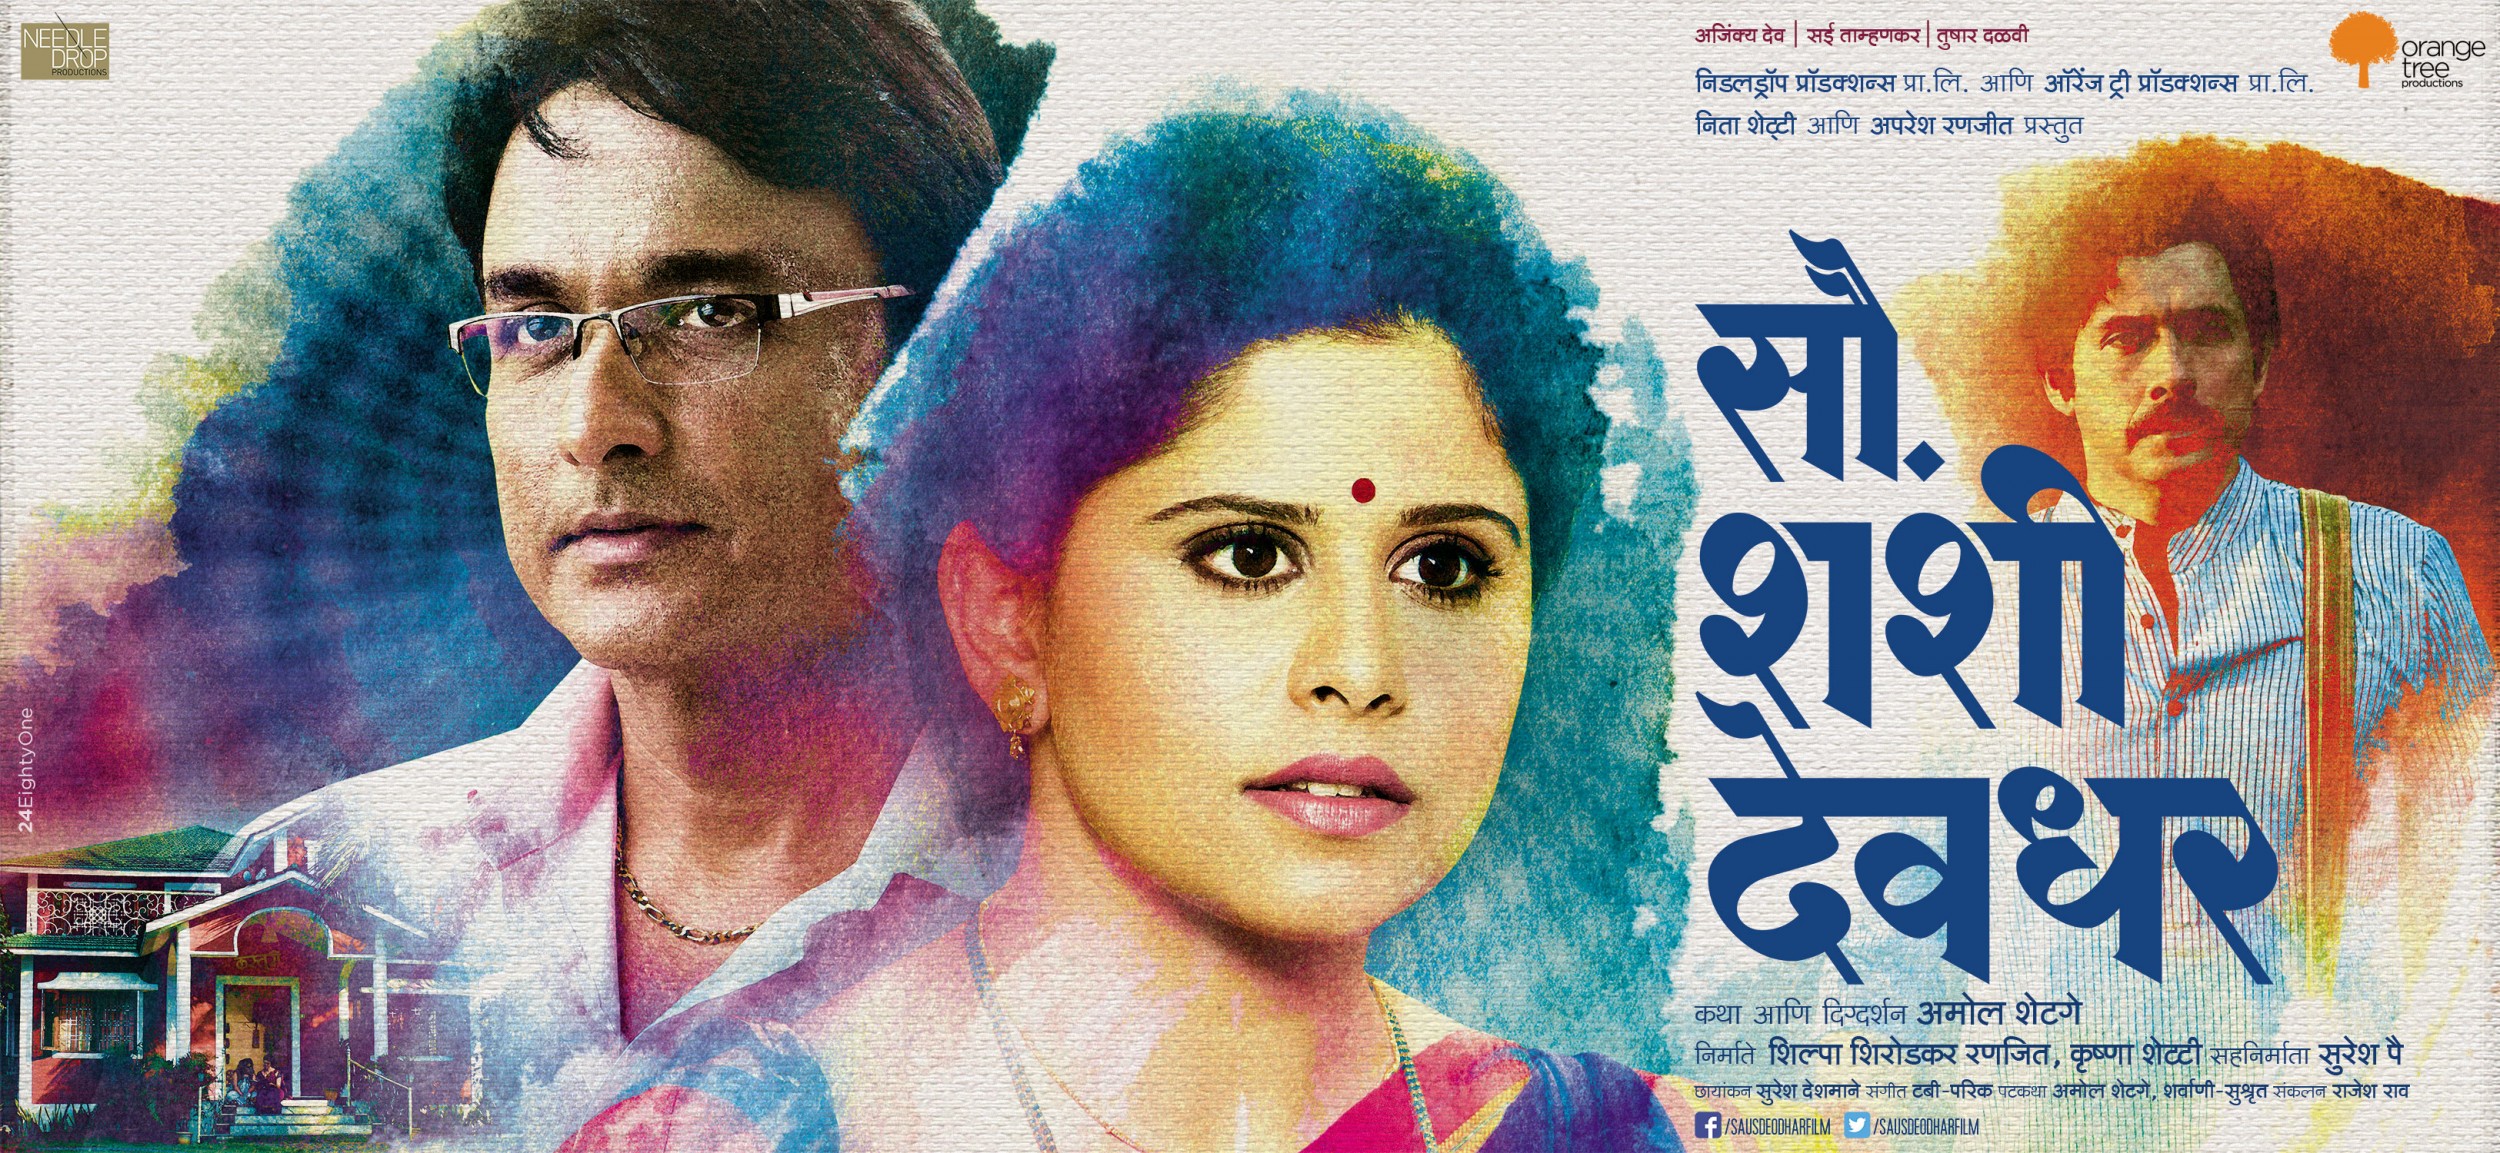 Mega Sized Movie Poster Image for Sau. Shashi Deodhar (#6 of 7)